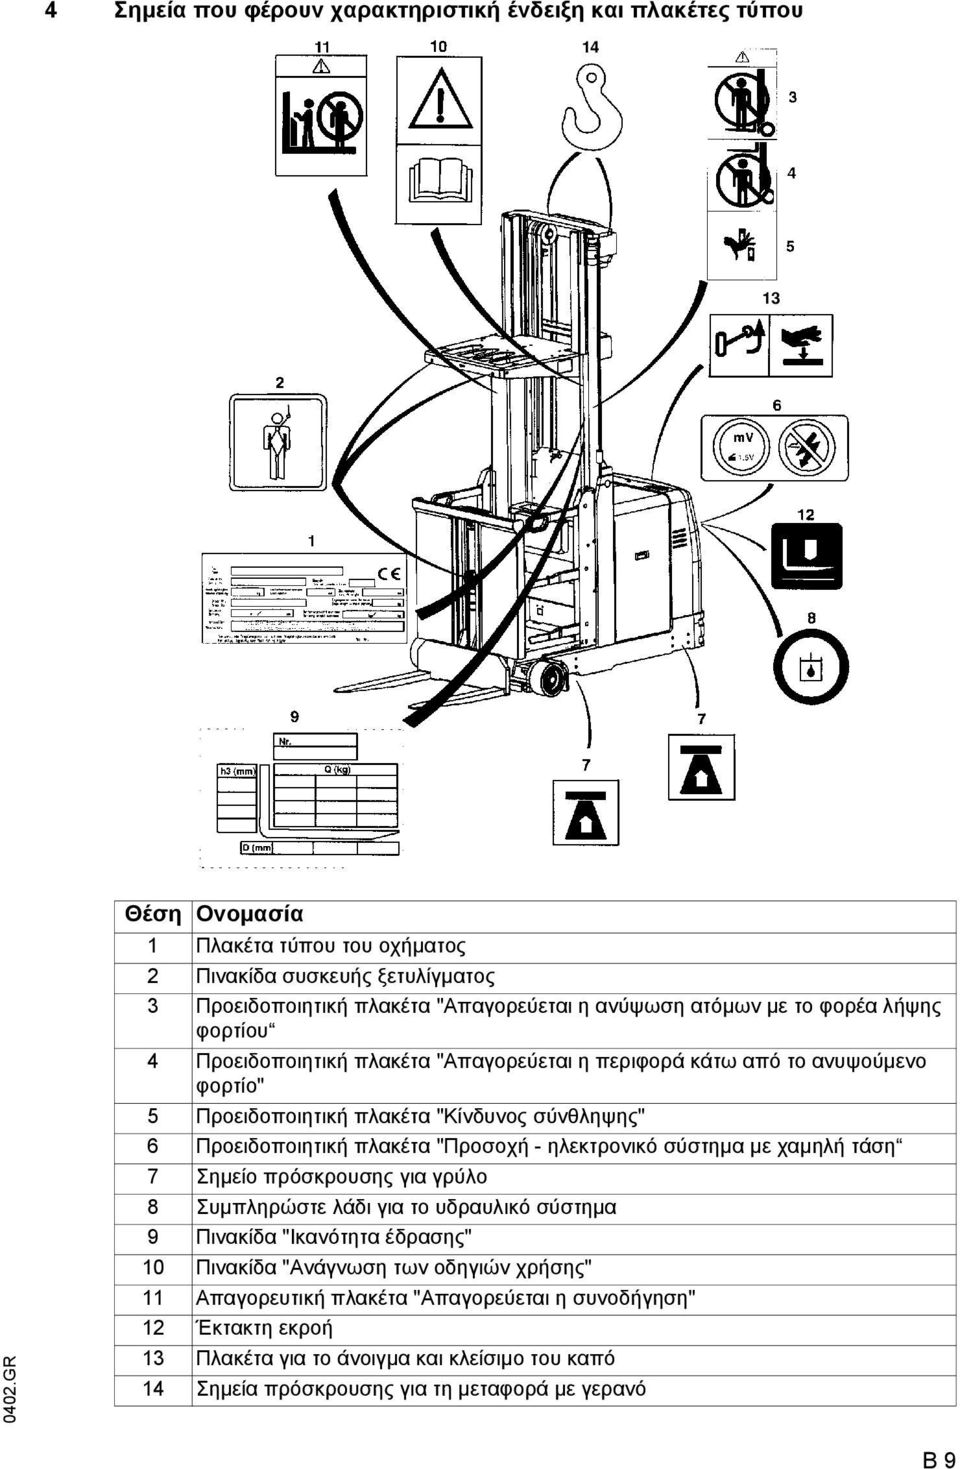 Προειδοποιητική πλακέτα "Προσοχή - ηλεκτρονικό σύστηµα µε χαµηλή τάση 7 Σηµείο πρόσκρουσης για γρύλο 8 Συµπληρώστε λάδι για το υδραυλικό σύστηµα 9 Πινακίδα "Ικανότητα έδρασης" 10